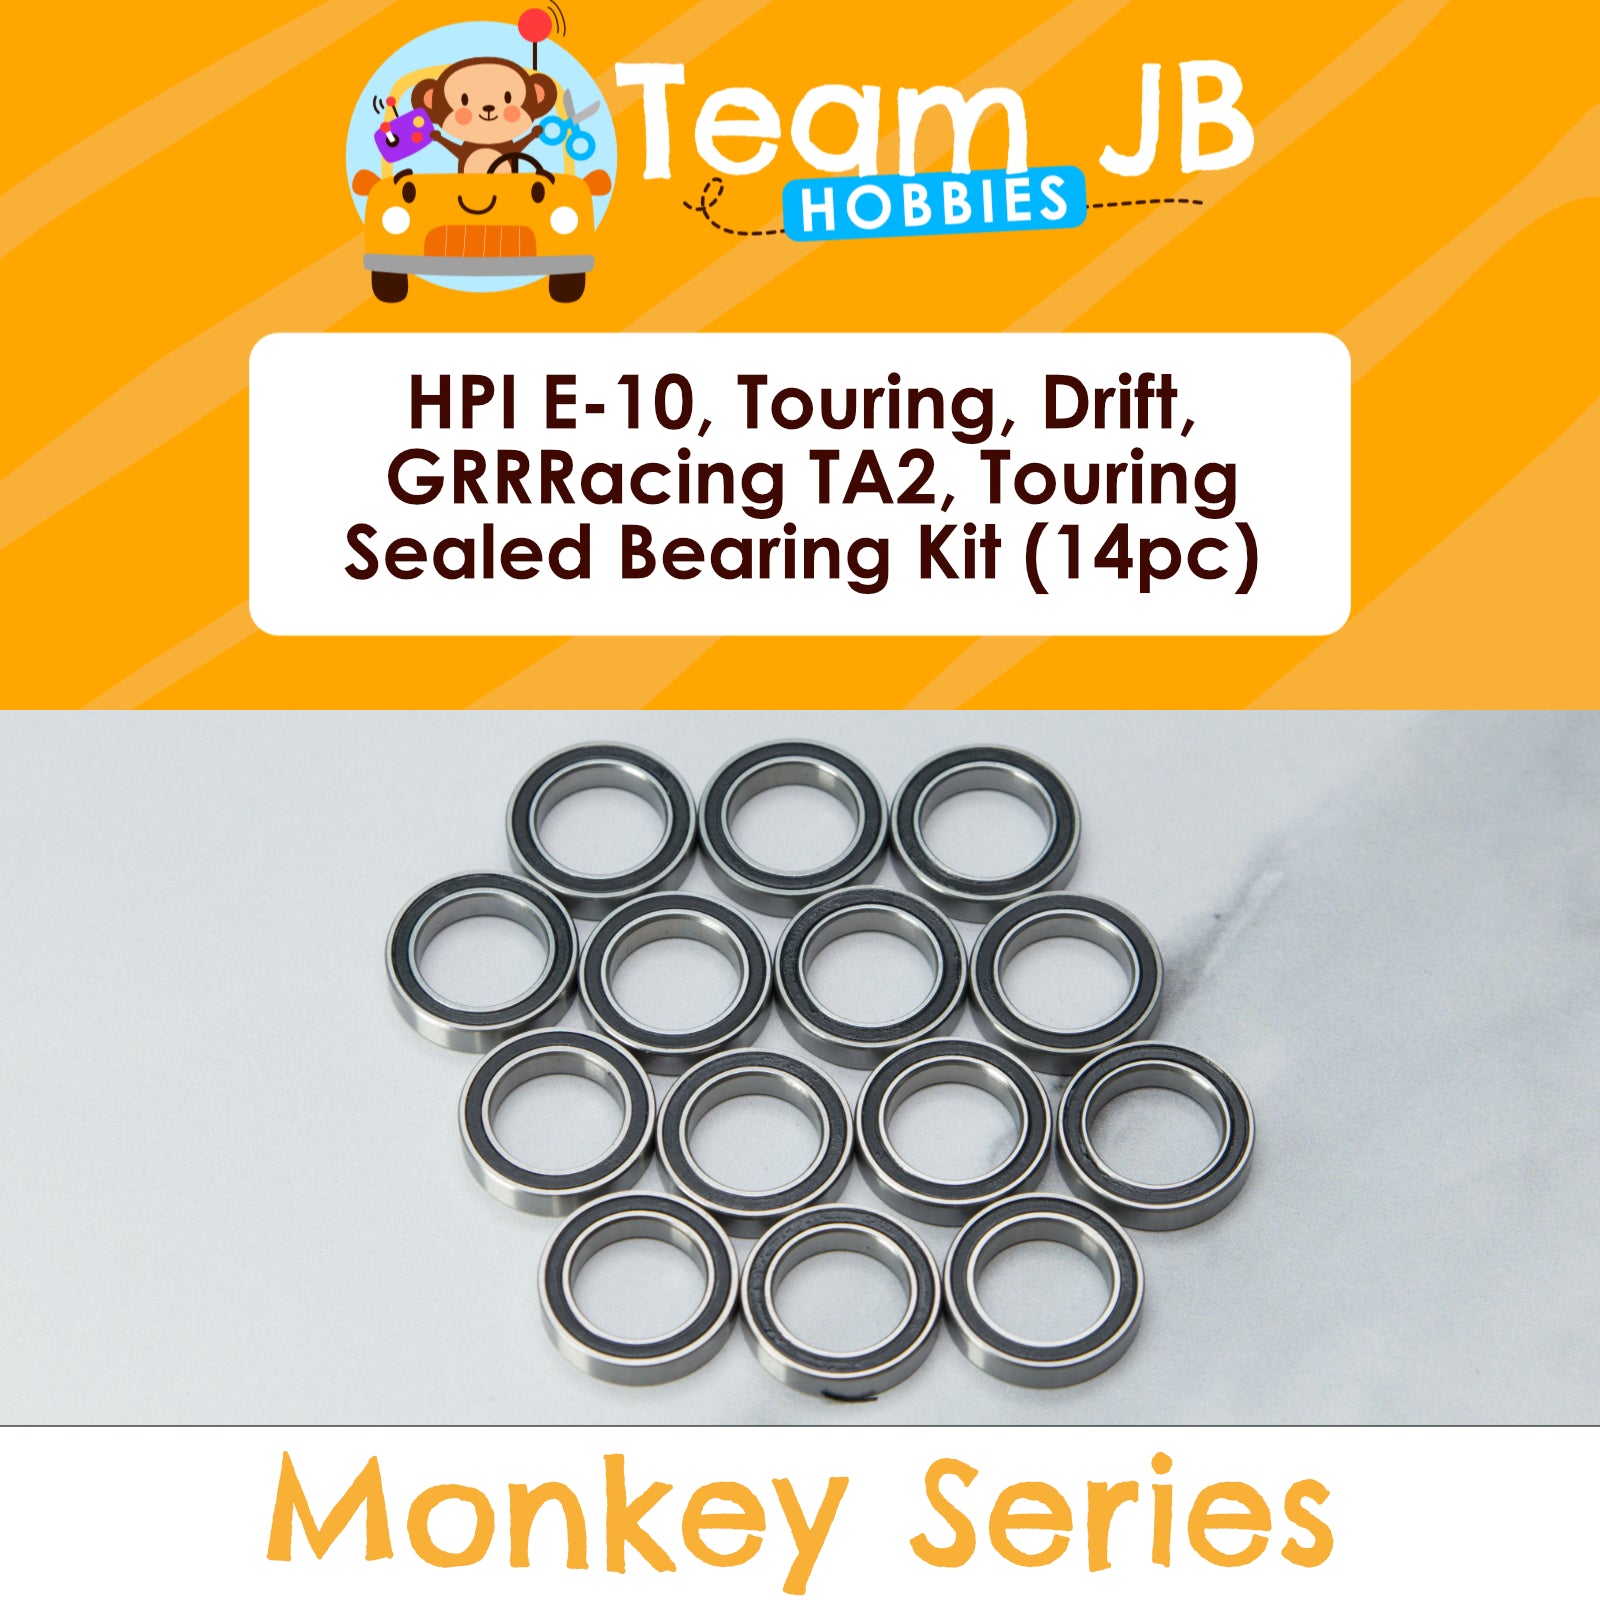 HPI E-10, Touring, Drift, GRRRacing TA2, Touring - Sealed Bearing Kit